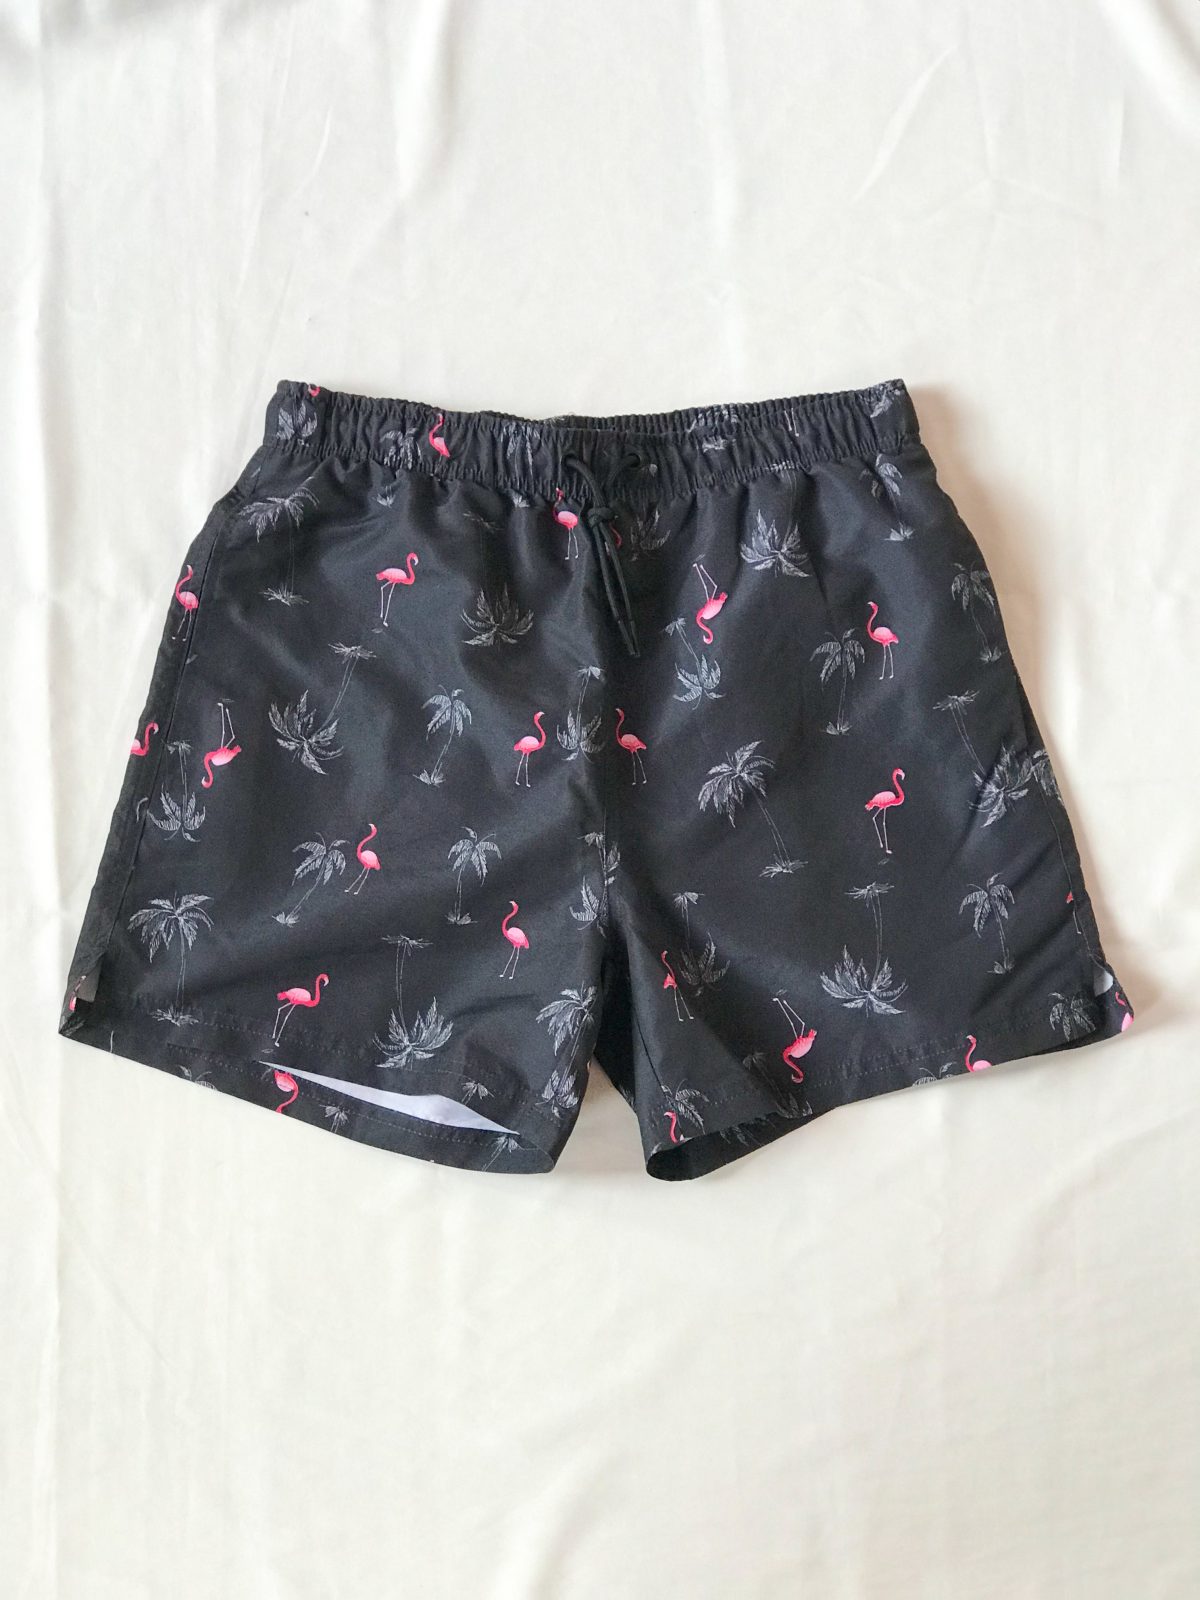 boardshort negro con estampado de palmeras y flamingos - ecuador - ropa gallardo - pantaloneta hombre - envios nacionales